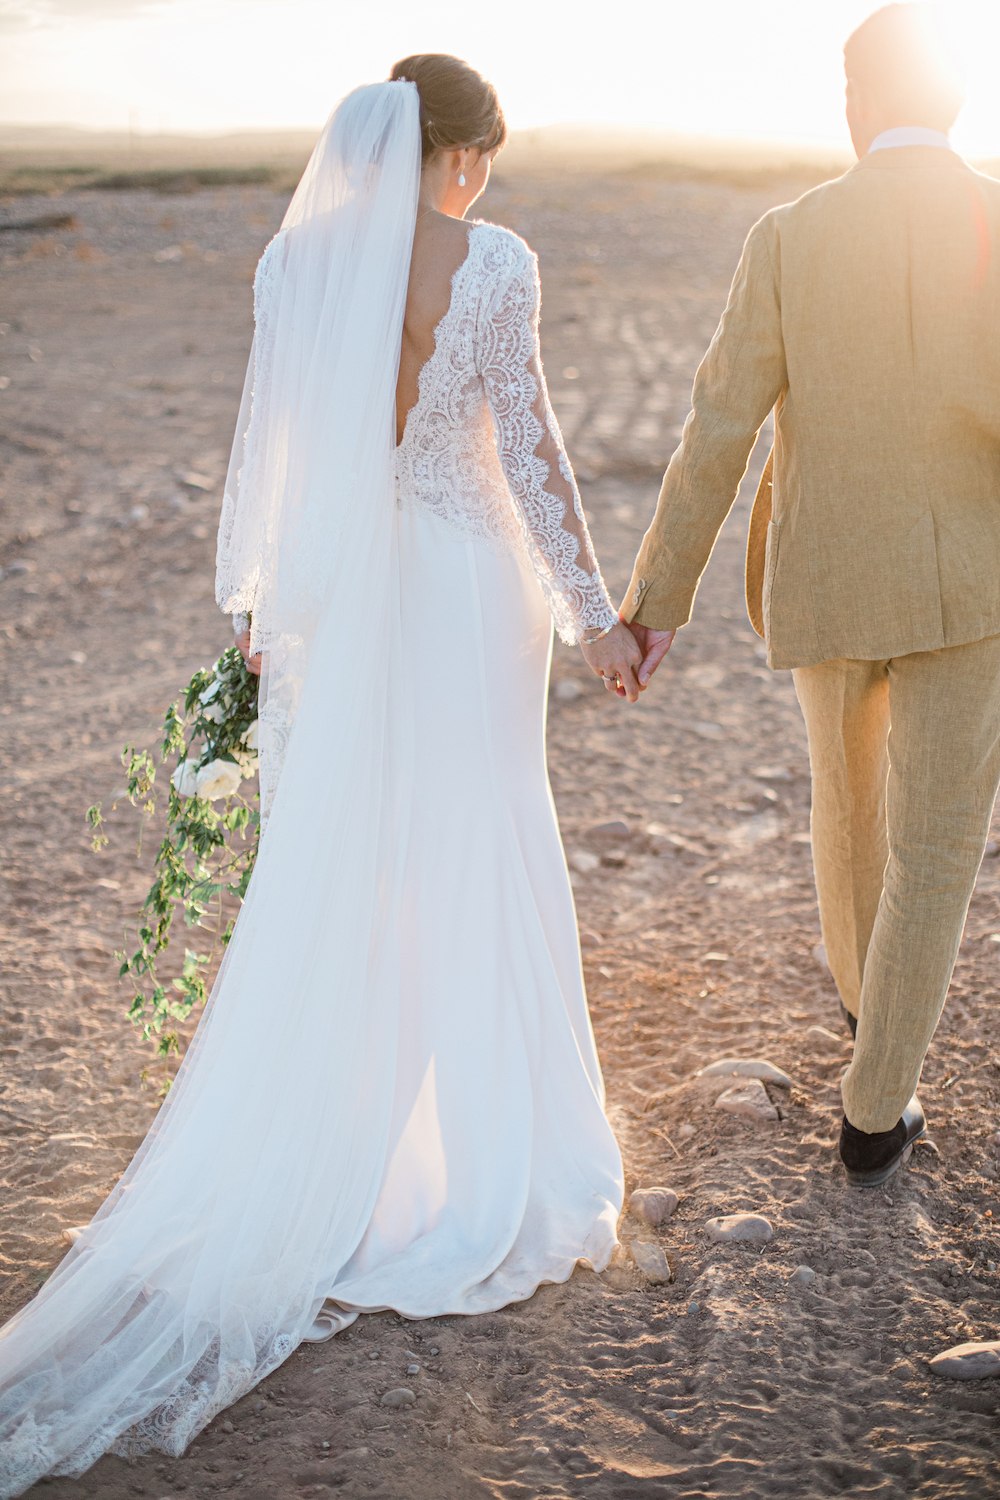 Un mariage à Marrakech - Laetitia + Frédéric - Blog Mariage Madame C